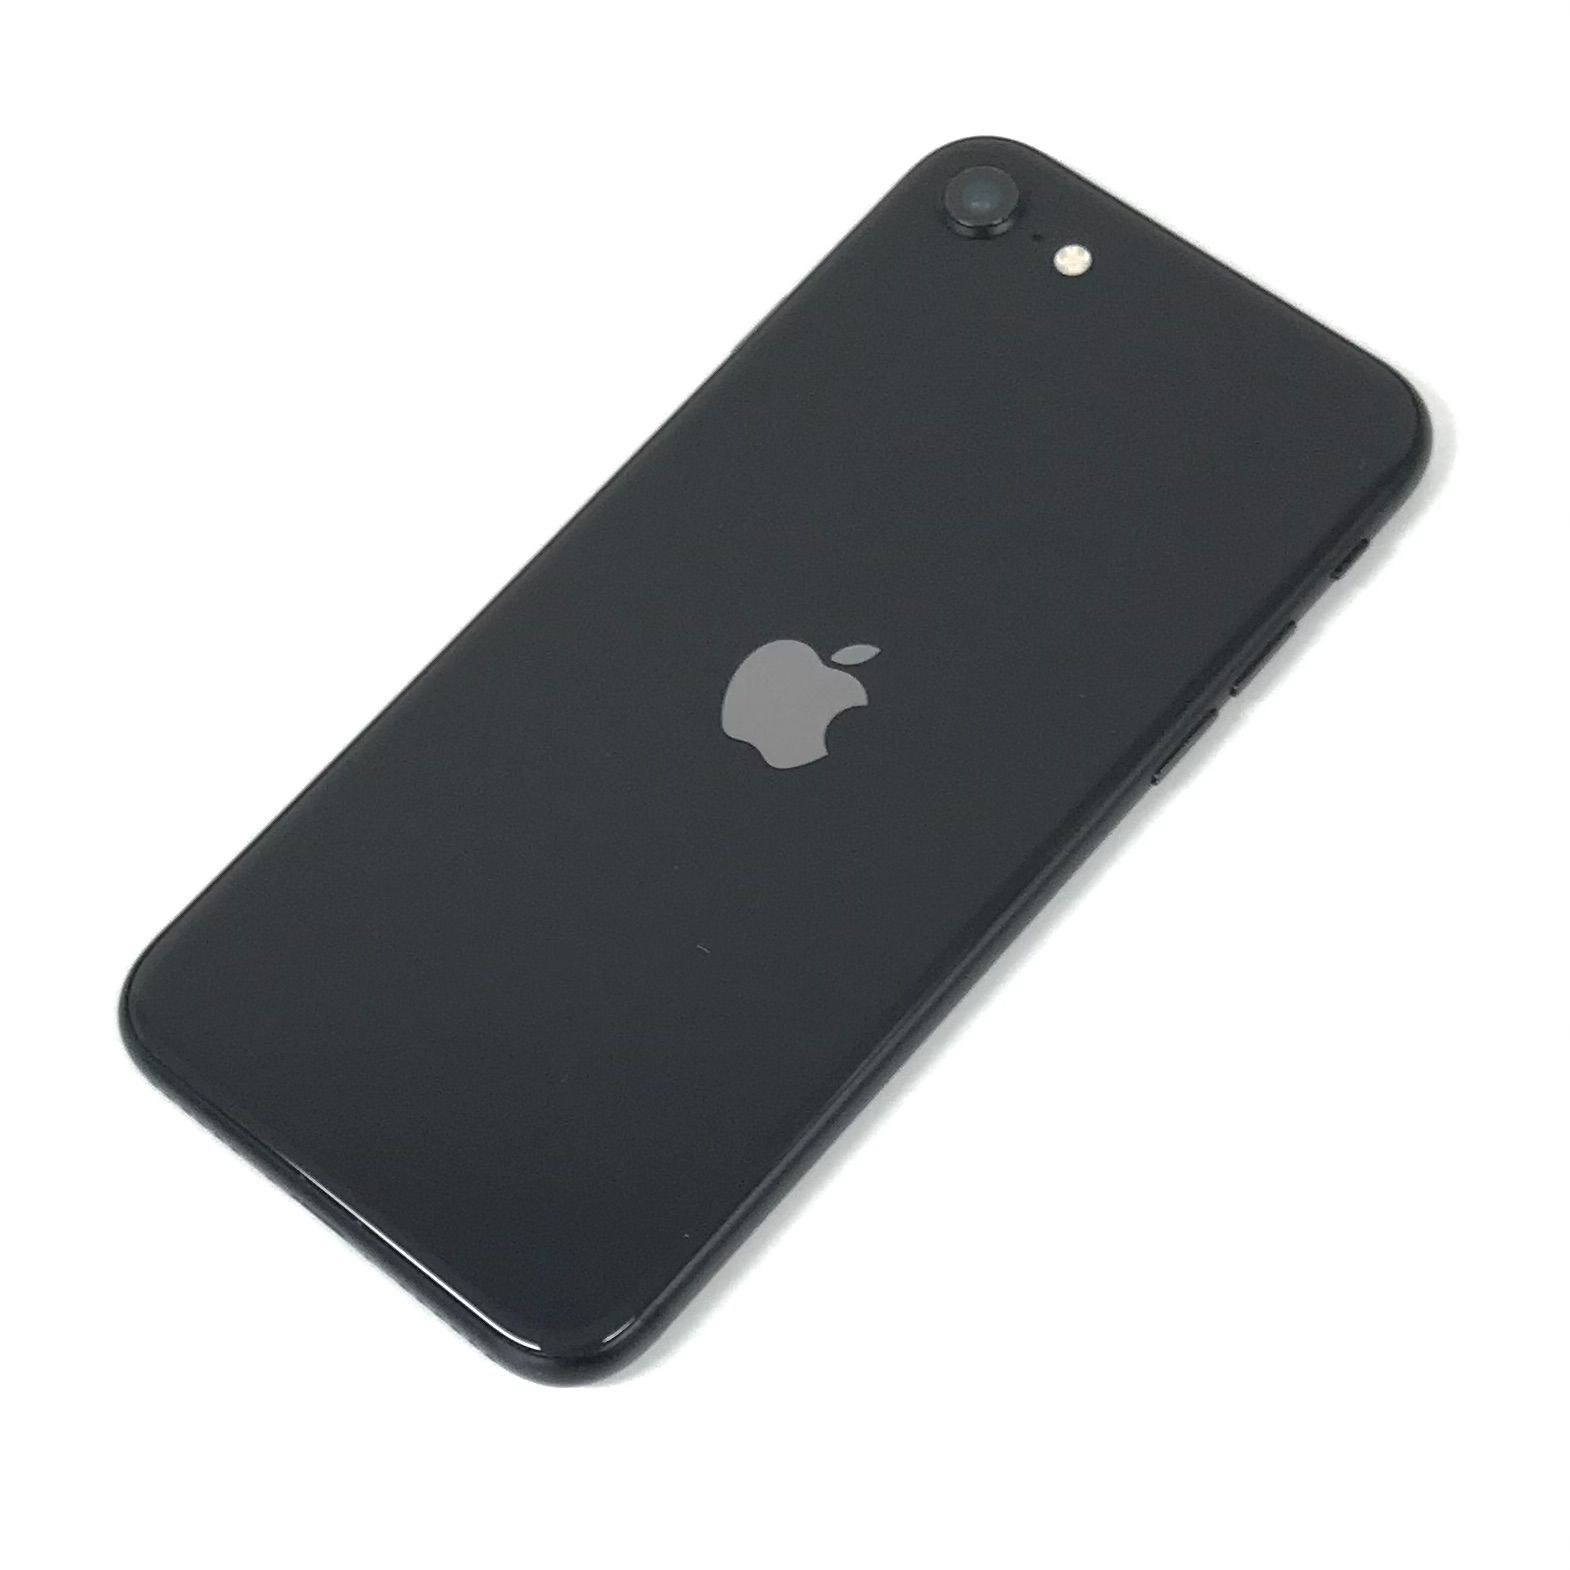 SIMフリー iPhoneSE 第2世代 64GB Black U3 アップル 直前割引 ...